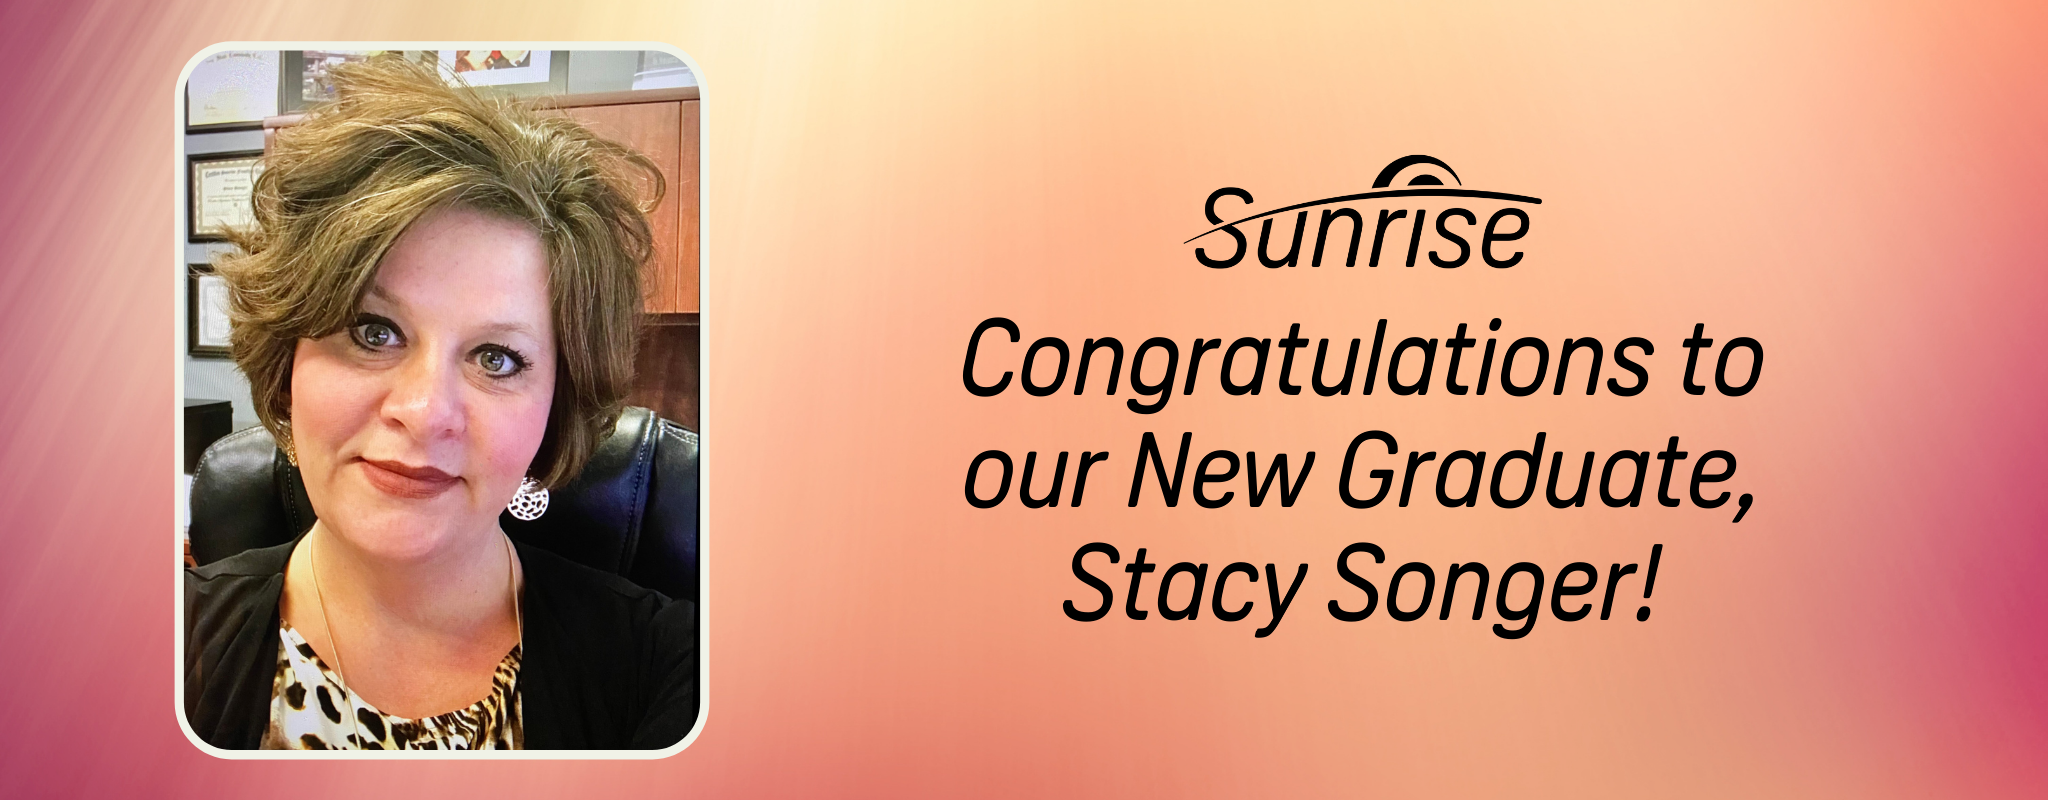 Félicitations à notre nouvelle diplômée, Stacy Songer!